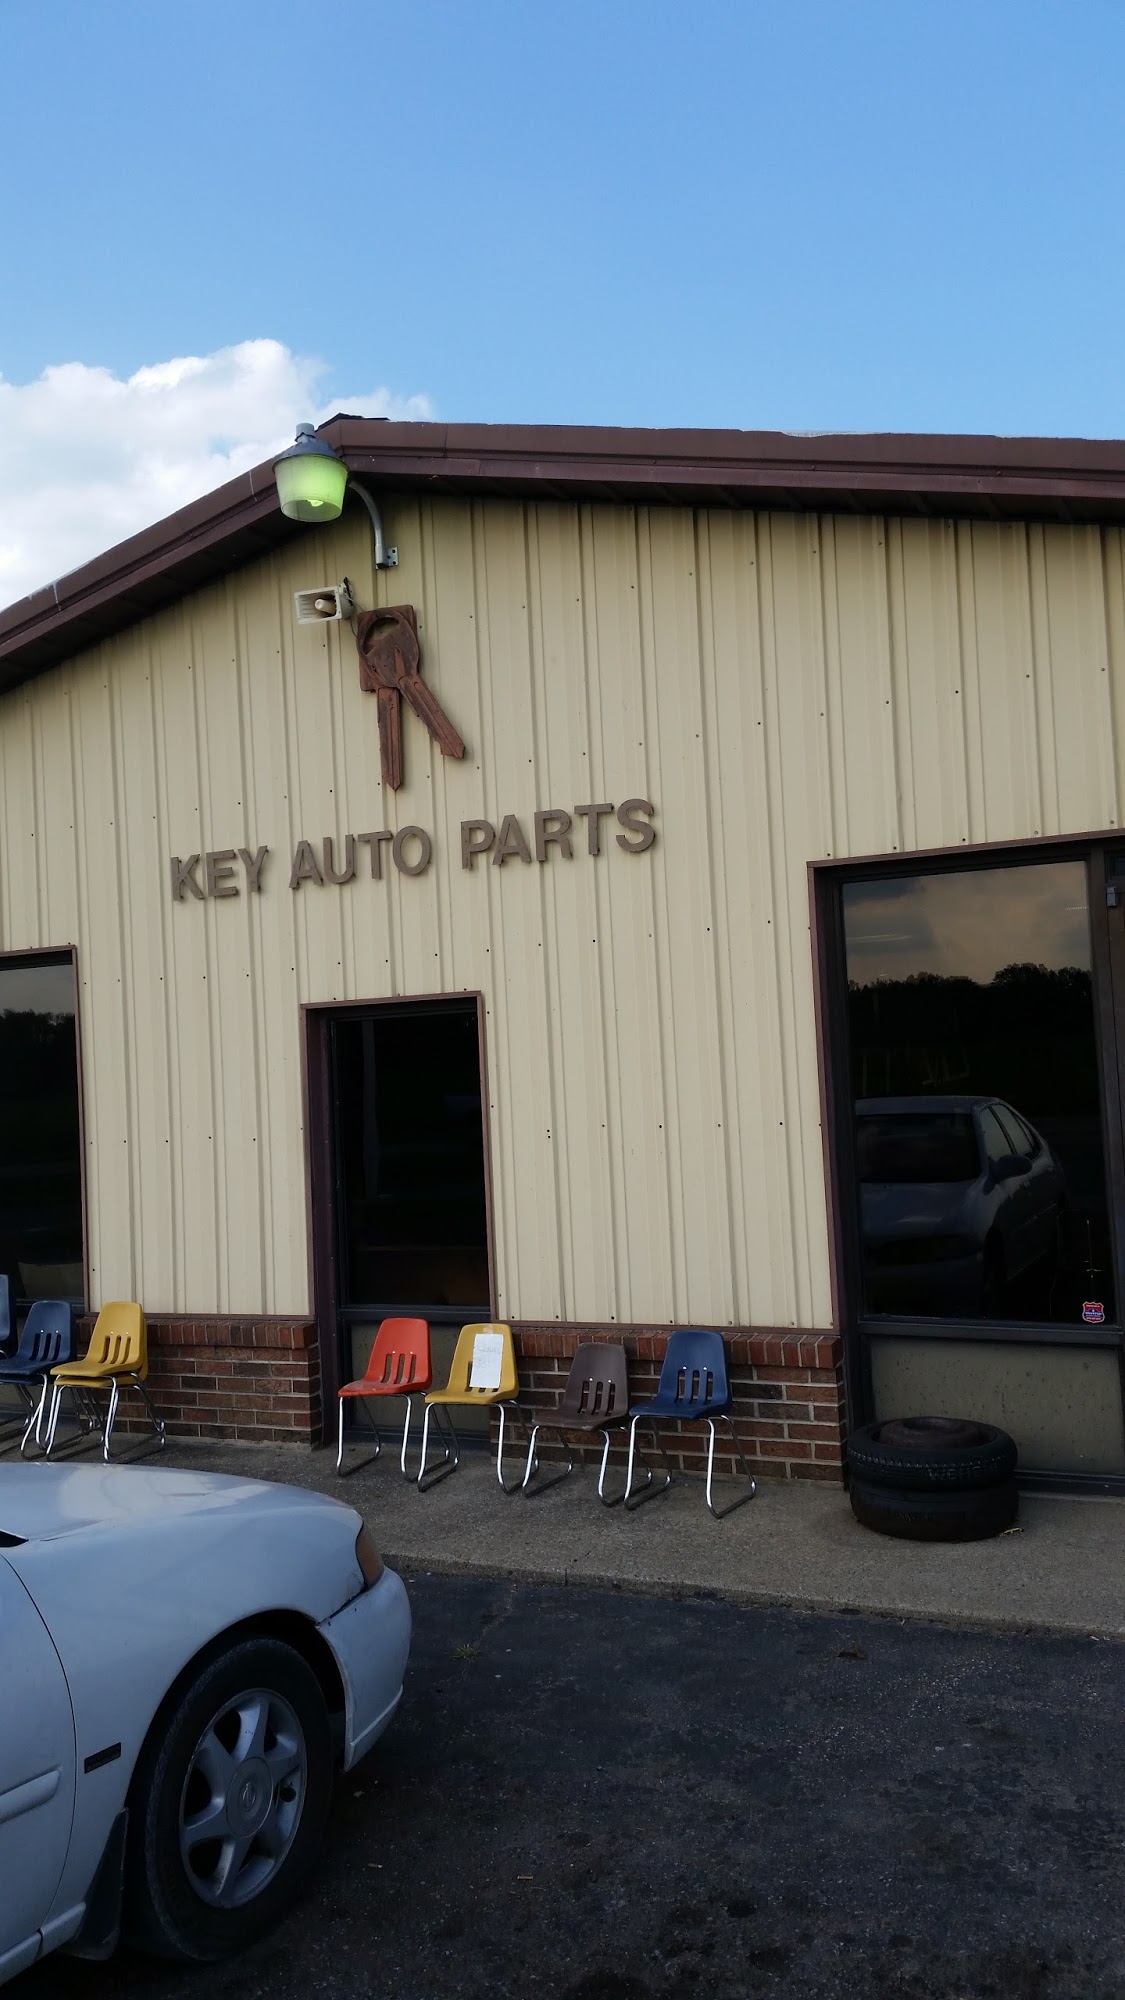 Key Auto Parts